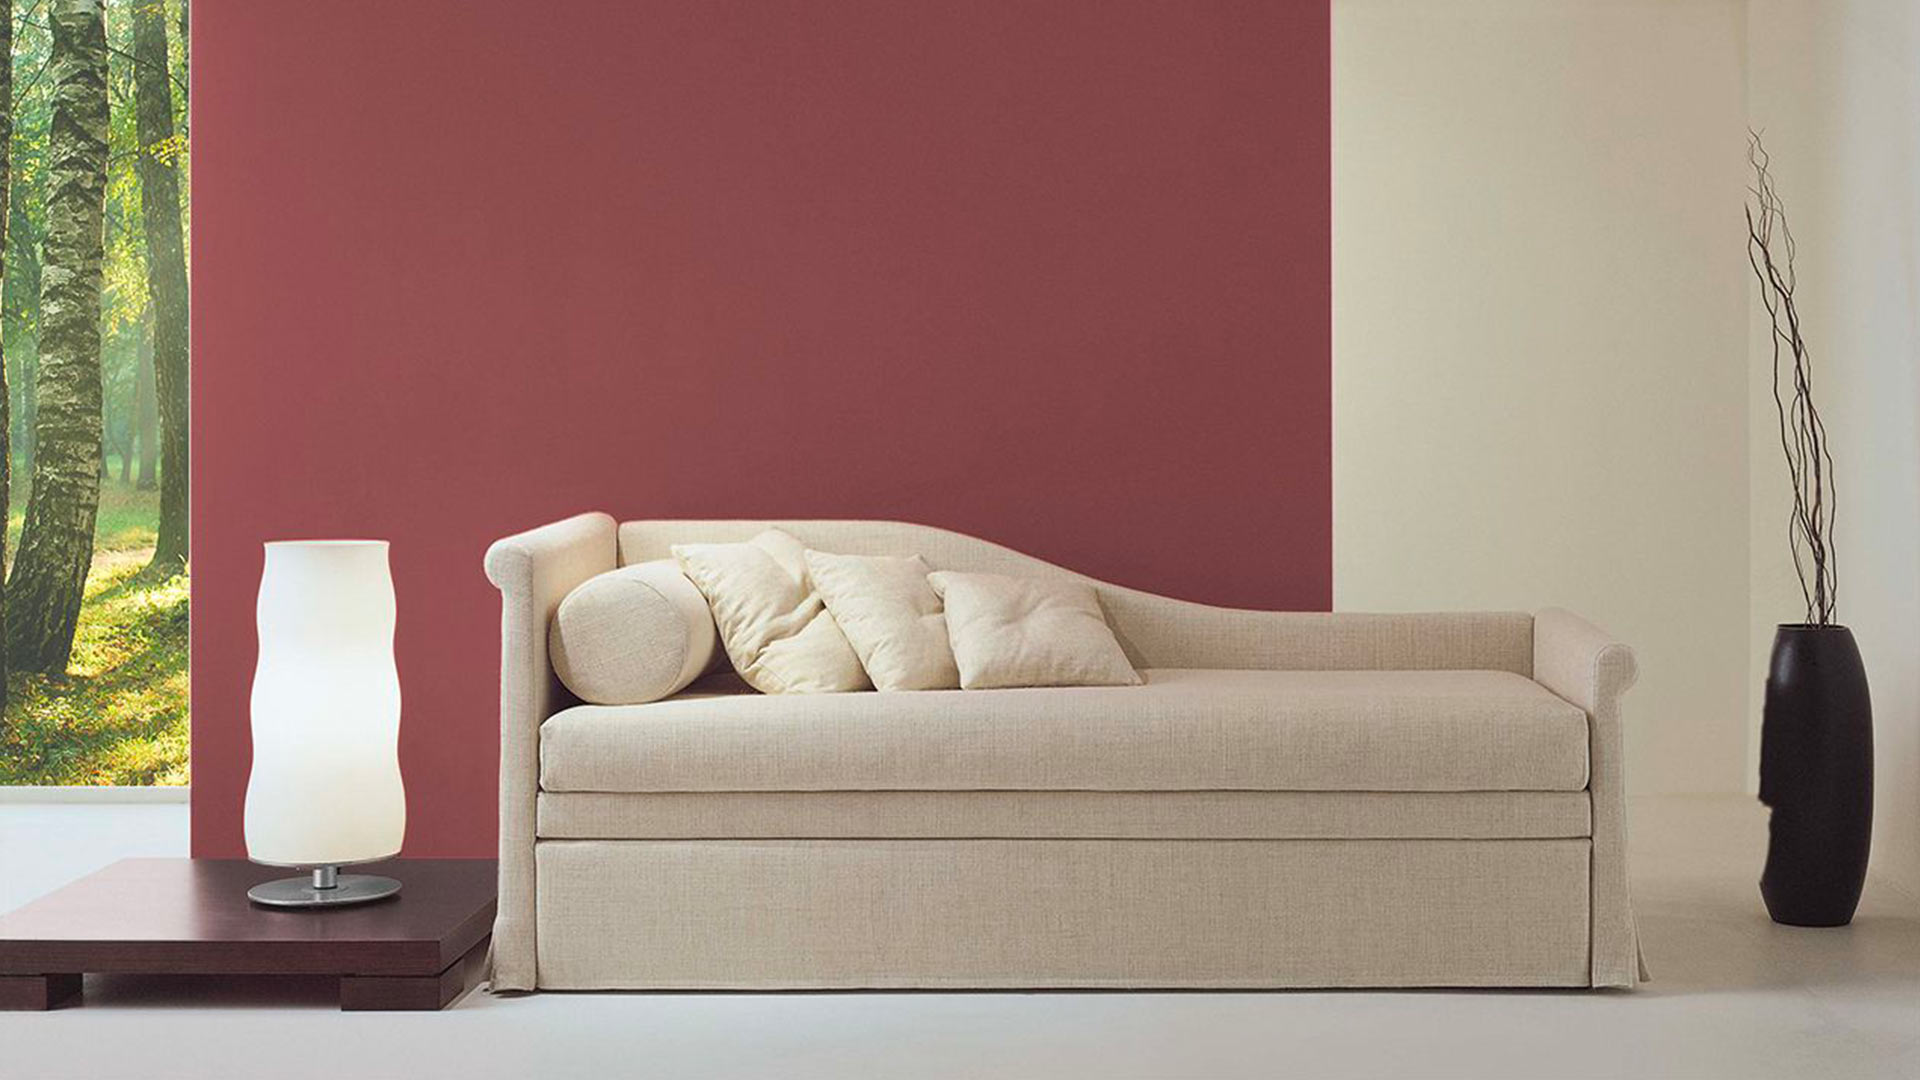 Blog IDW - Come scegliere il divano letto più adatto al proprio spazio